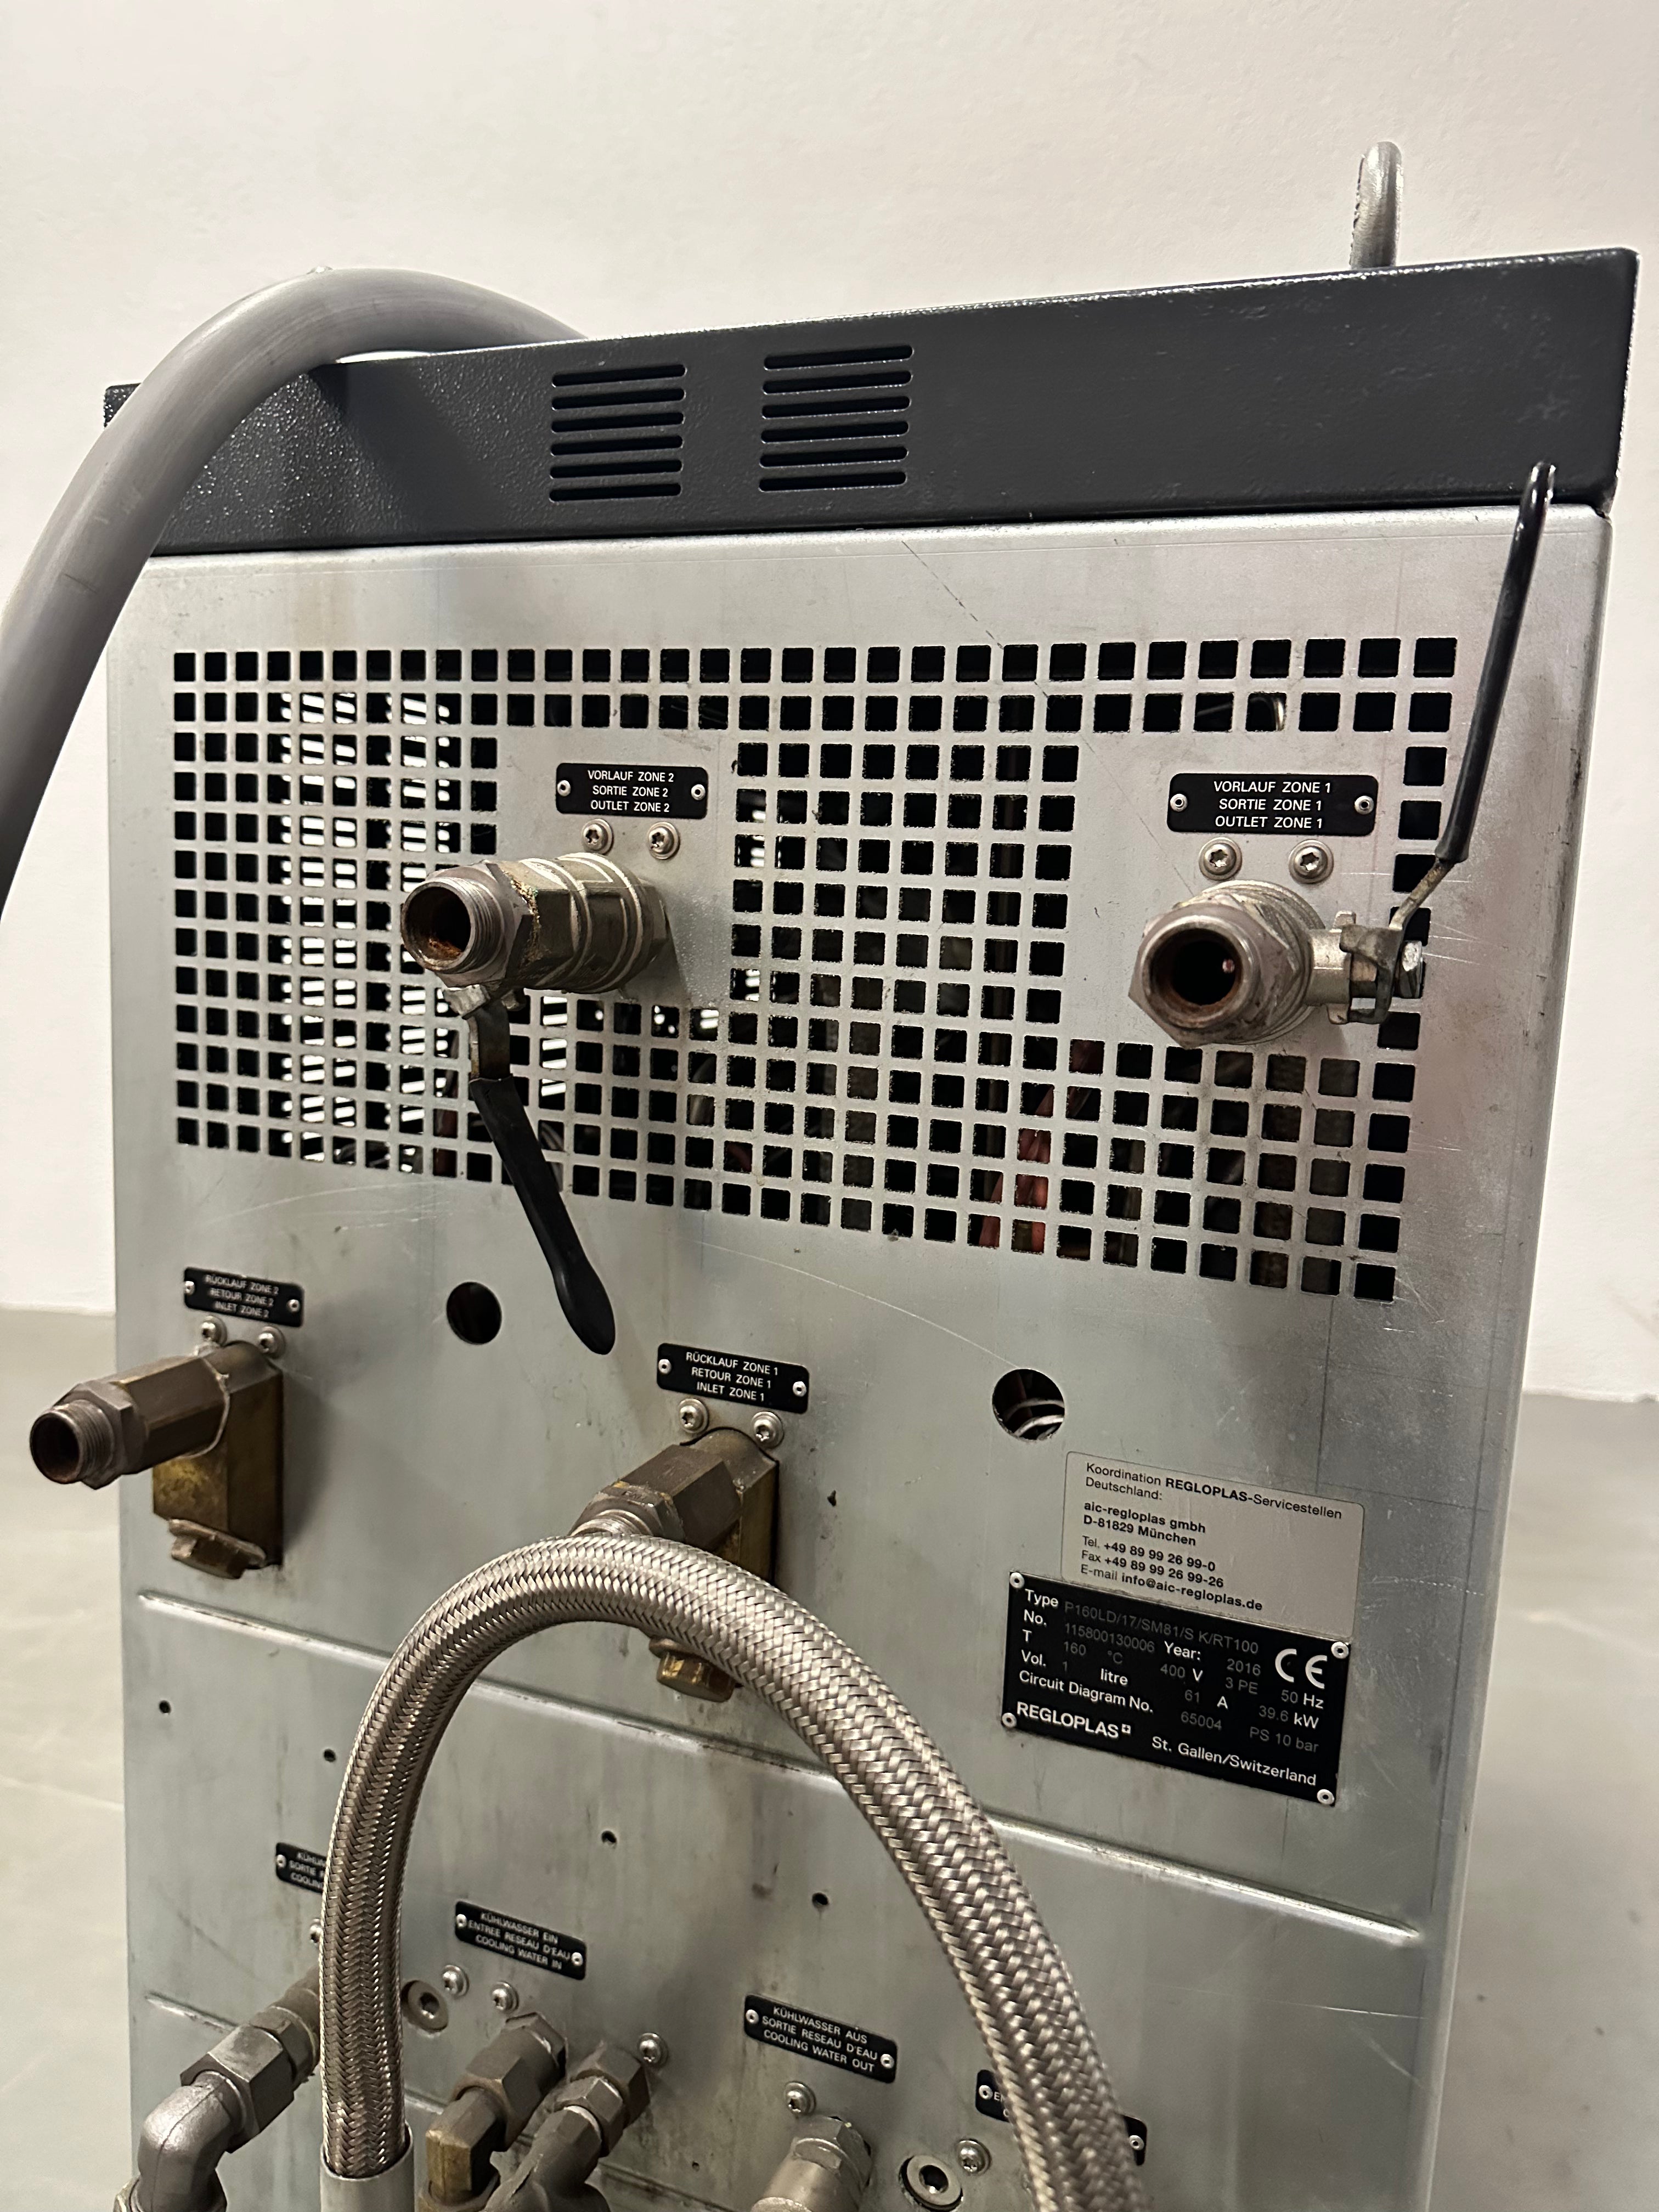 Regloplas unidad de control de temperatura agua a presión P160LD/17/SM81/S K/RT100